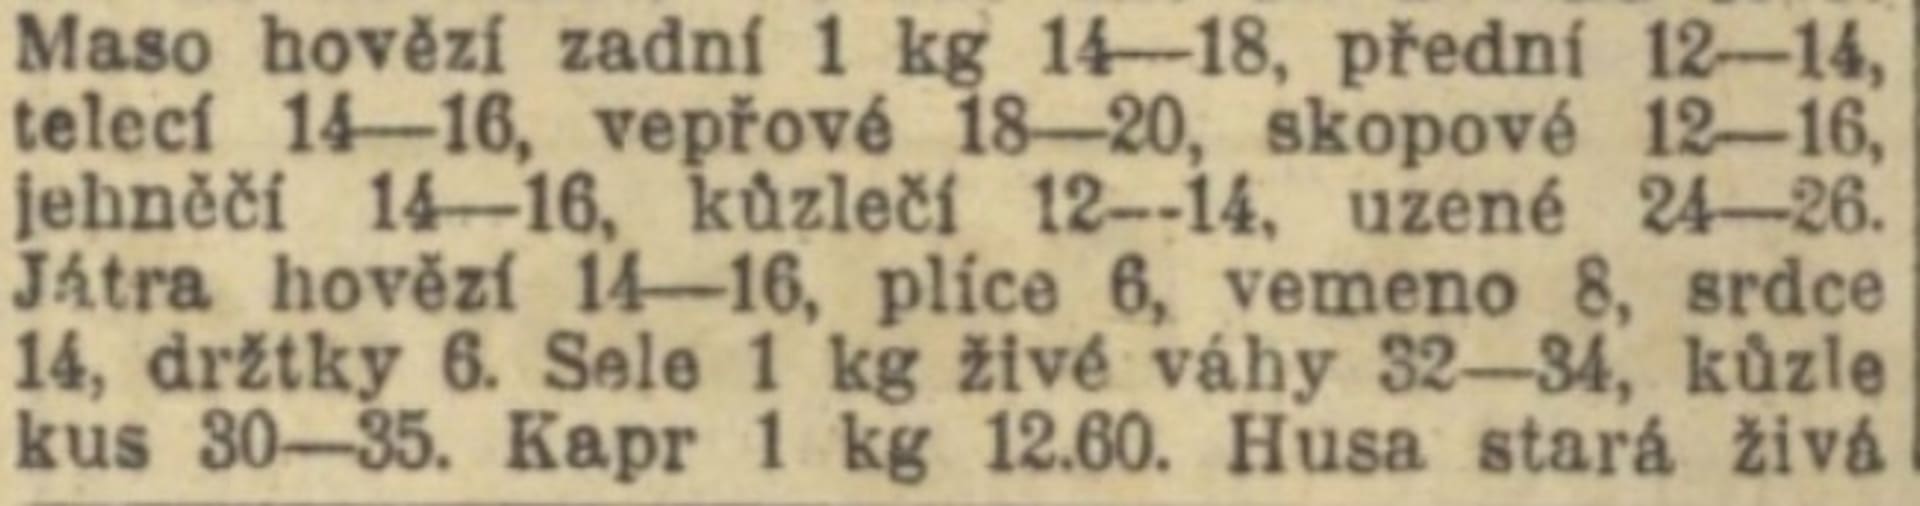 Vánoce 1923. Ceny masa včetně kapra.